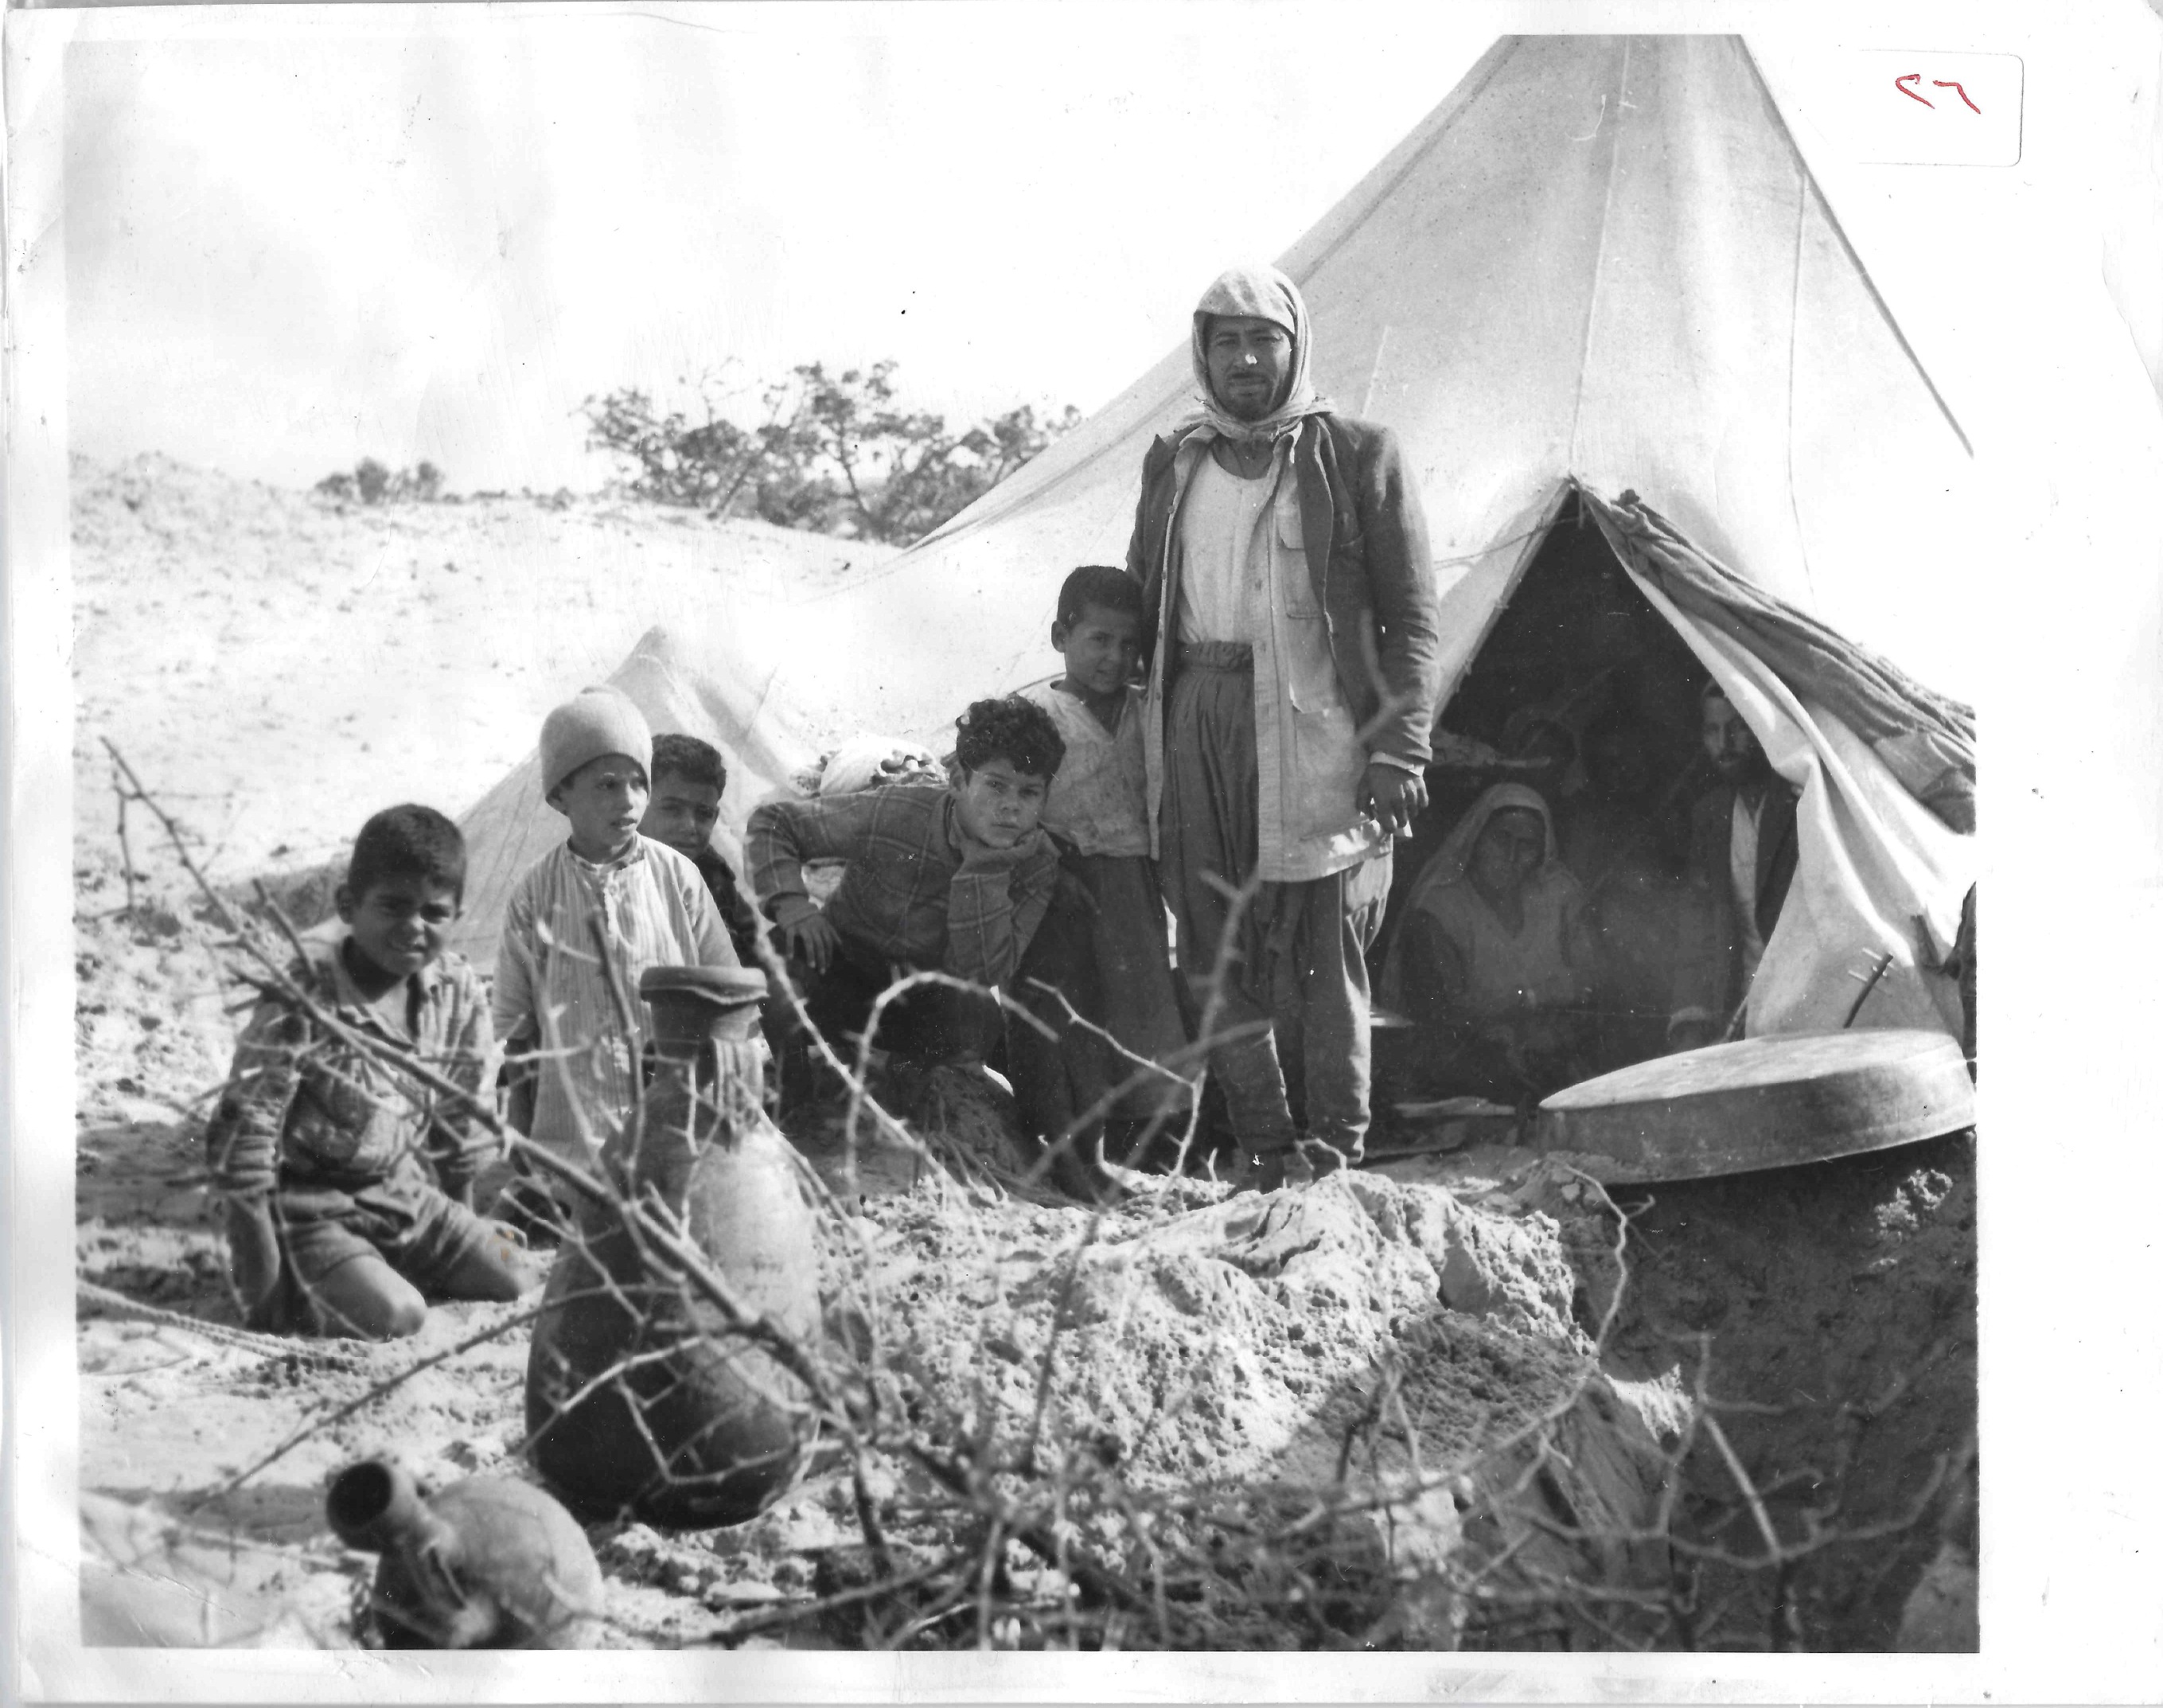  مخيمات اللاجئين الفلسطينيين عام 1949.jpg